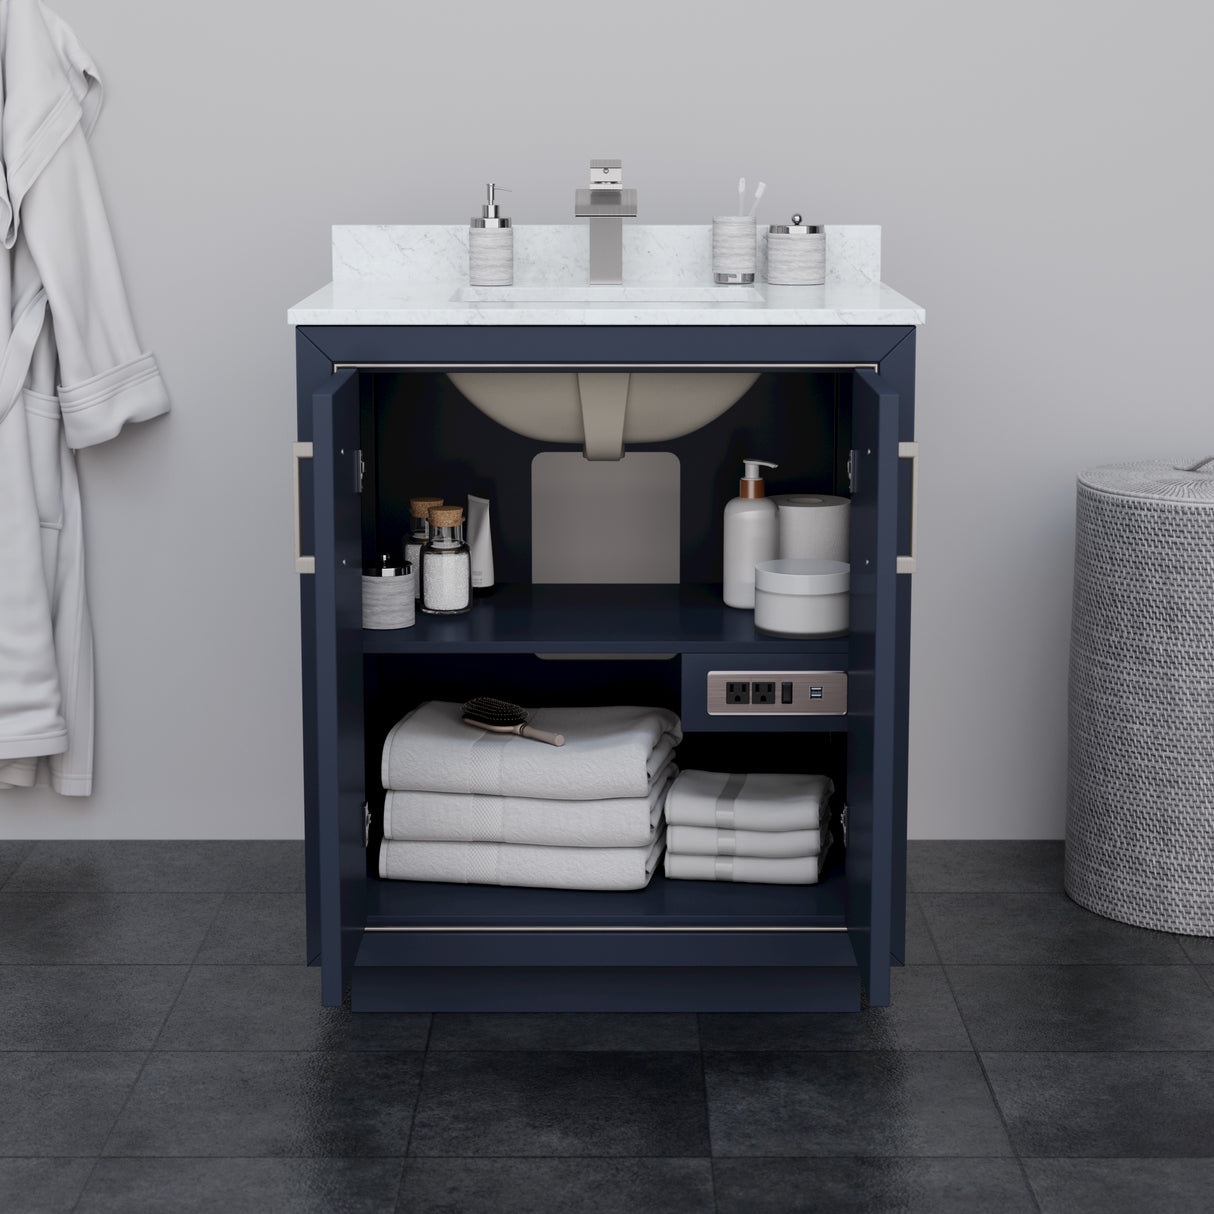 Icon 30 Inch Single Bathroom Vanity in Dark Blue No Countertop No Sink Brushed Nickel Trim